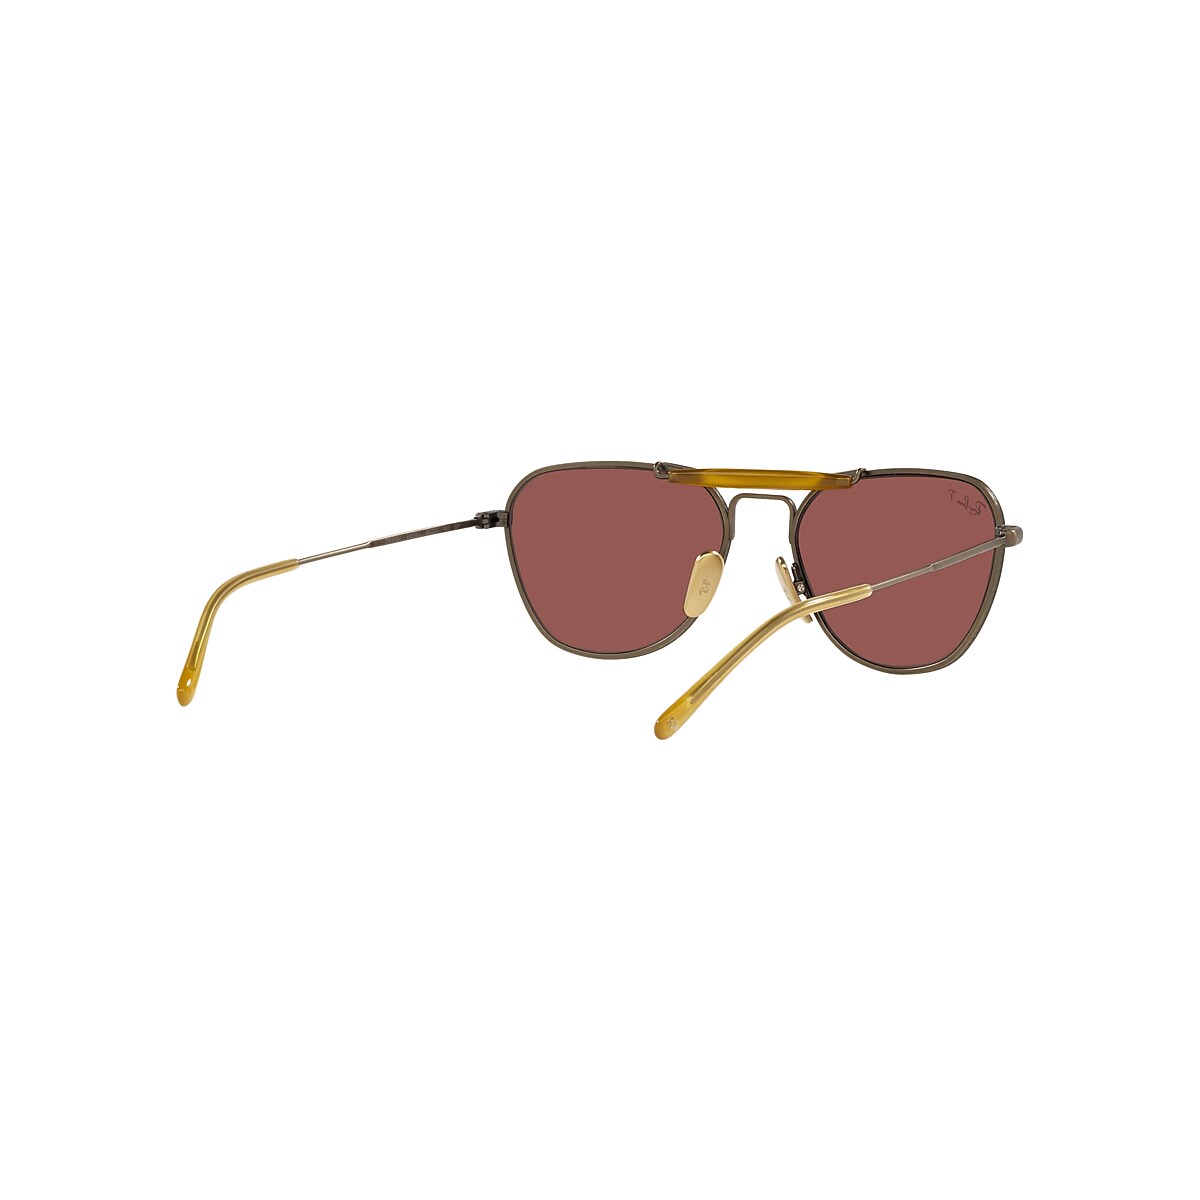 RB8064 TITANIUM Sunglasses in Antique Gold and Violet - RB8064